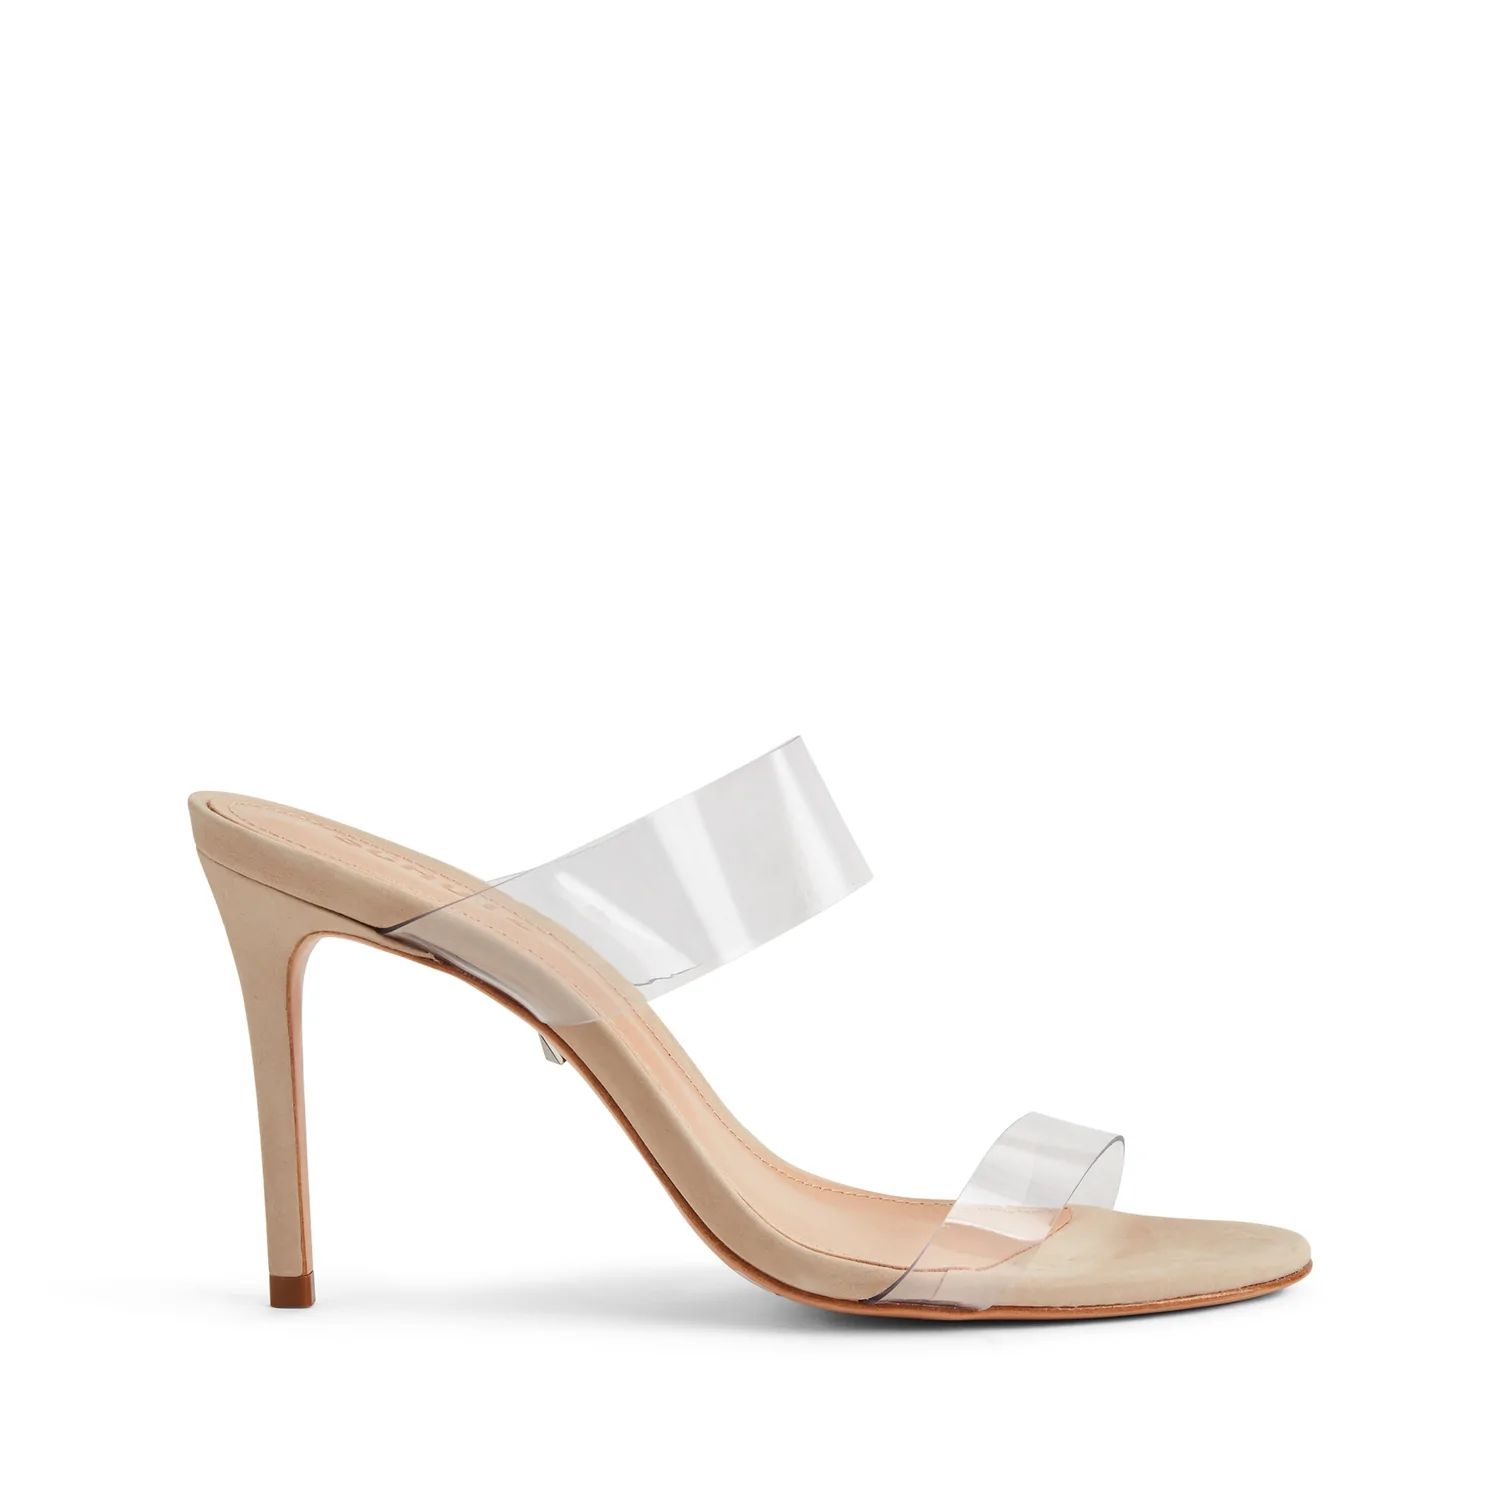 Ariella Sandal: Nude Color | Schutz | Schutz Shoes (US)